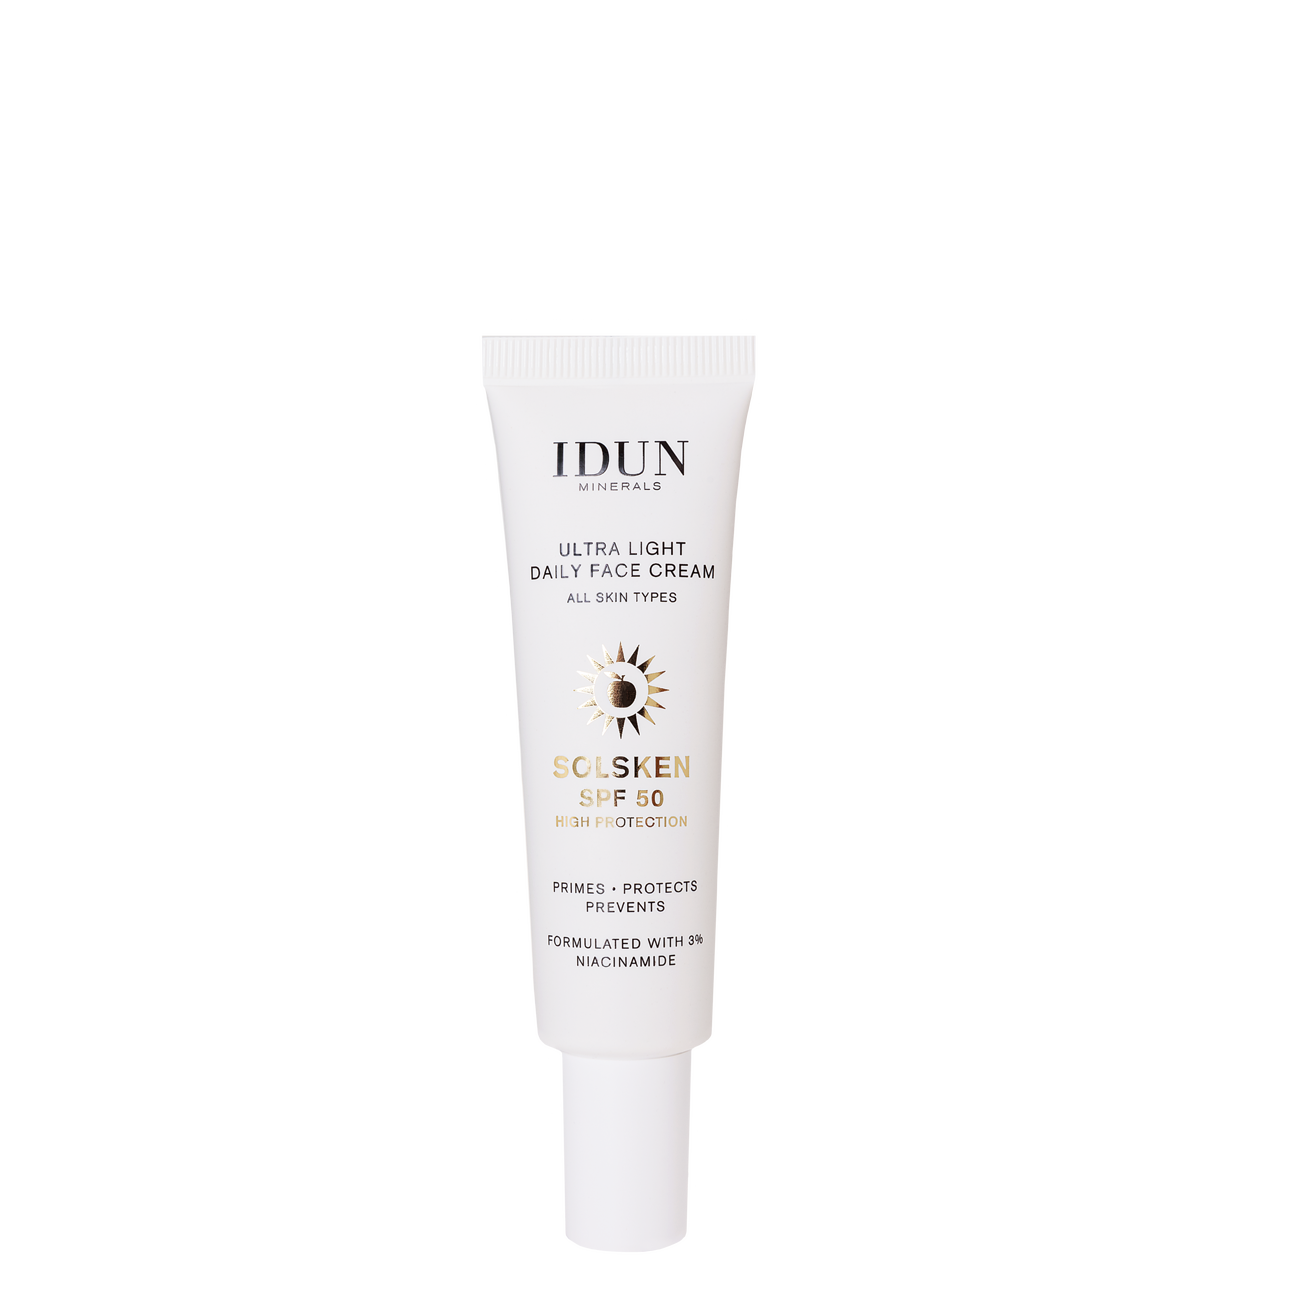 IDUN Minerals Ultra Light Daily Face Cream Solsken SPF50 30 ml